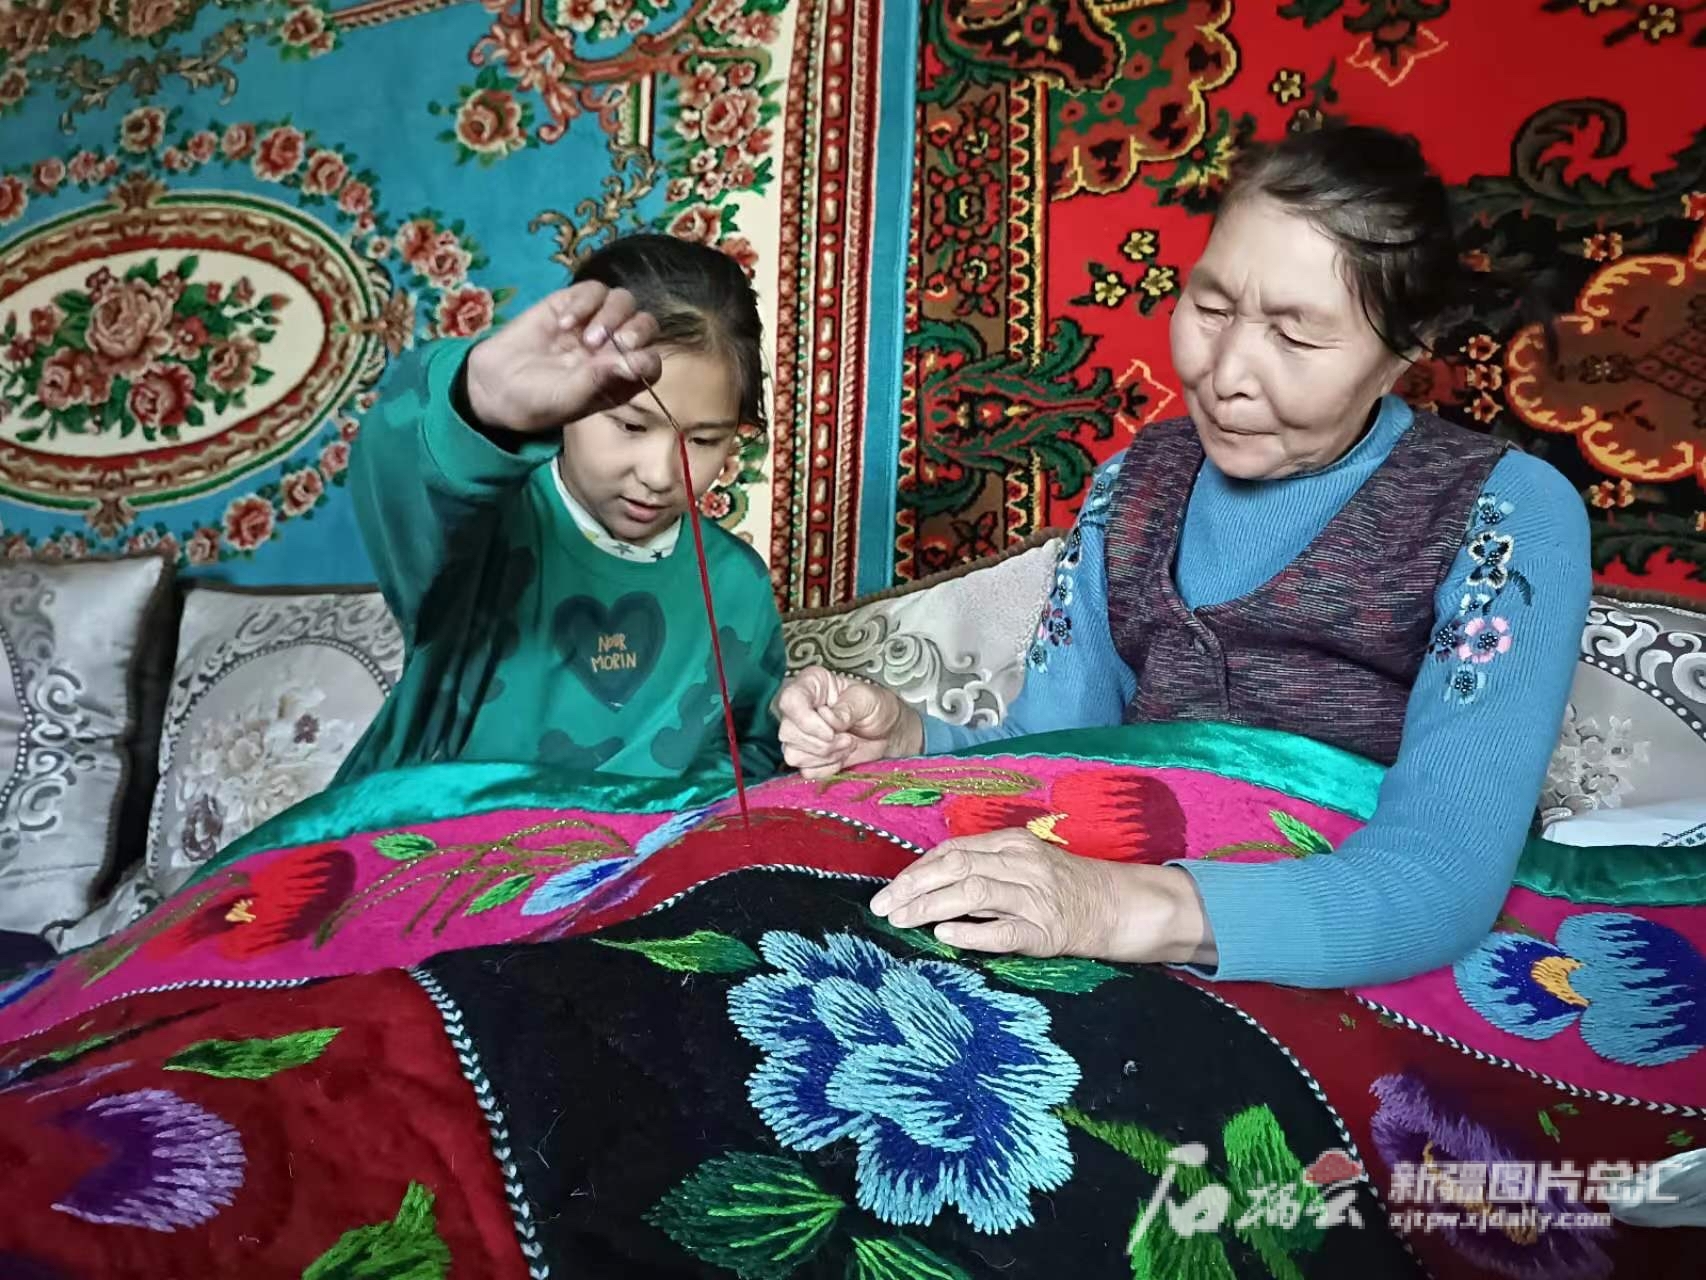 乌苏市白杨沟镇乌兰布拉克村村民奴尔古丽·吐尔斯别克正在给女儿教刺绣。金尕摄